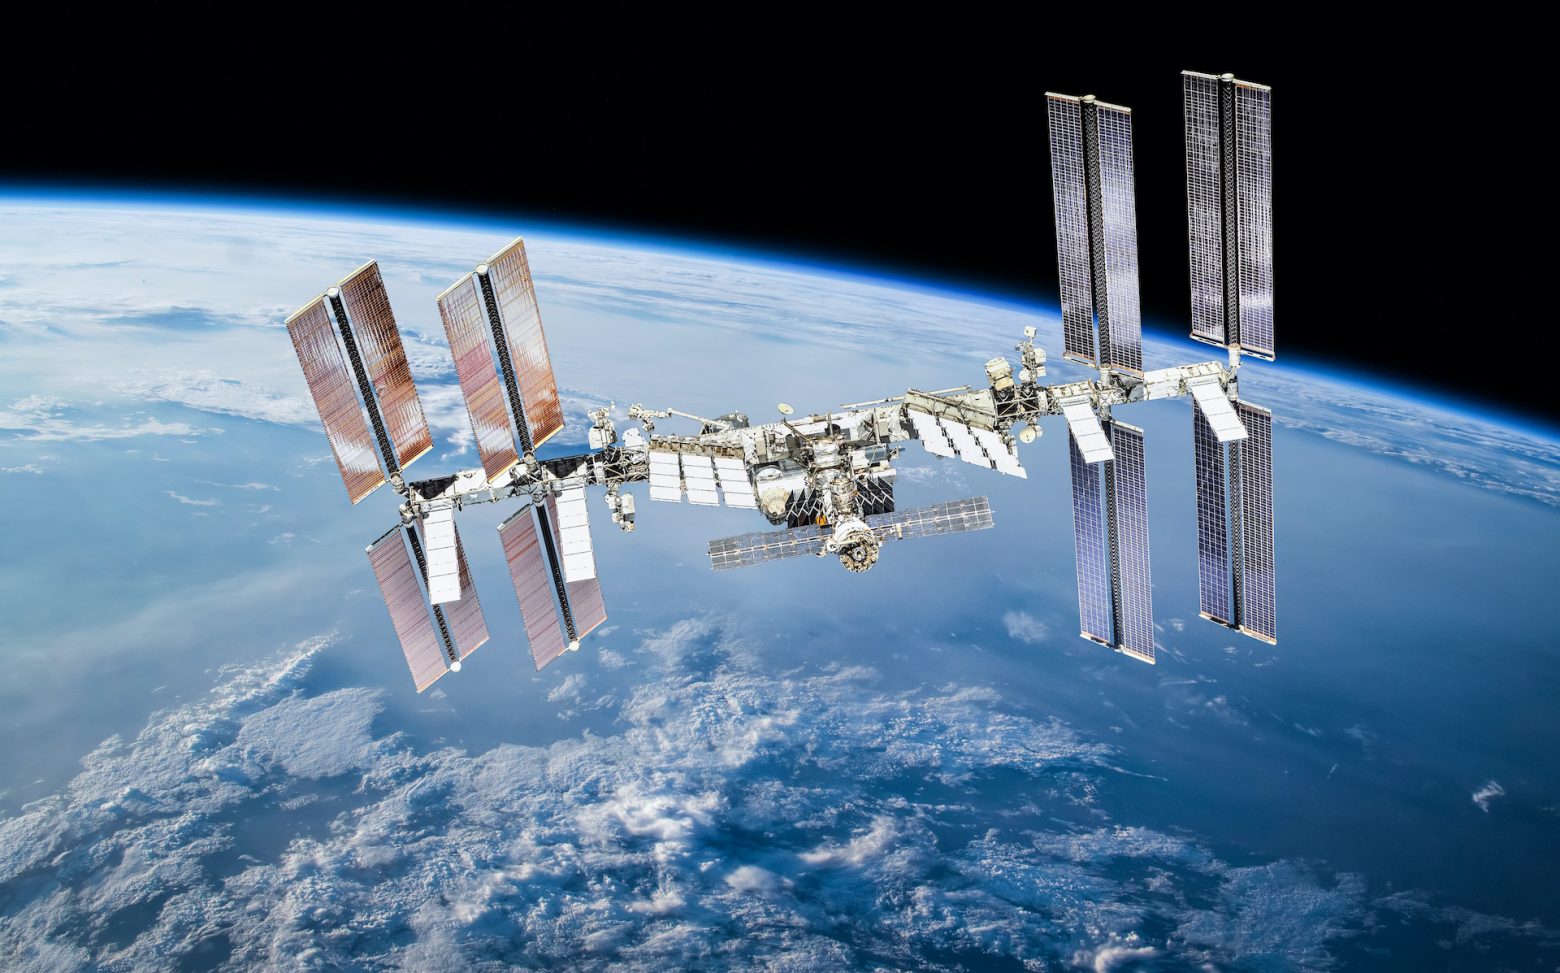 Αστροναύτης μας δείχνει πως λούζονται στον Διεθνή Διαστημικό Σταθμό και γίνεται viral (βίντεο)